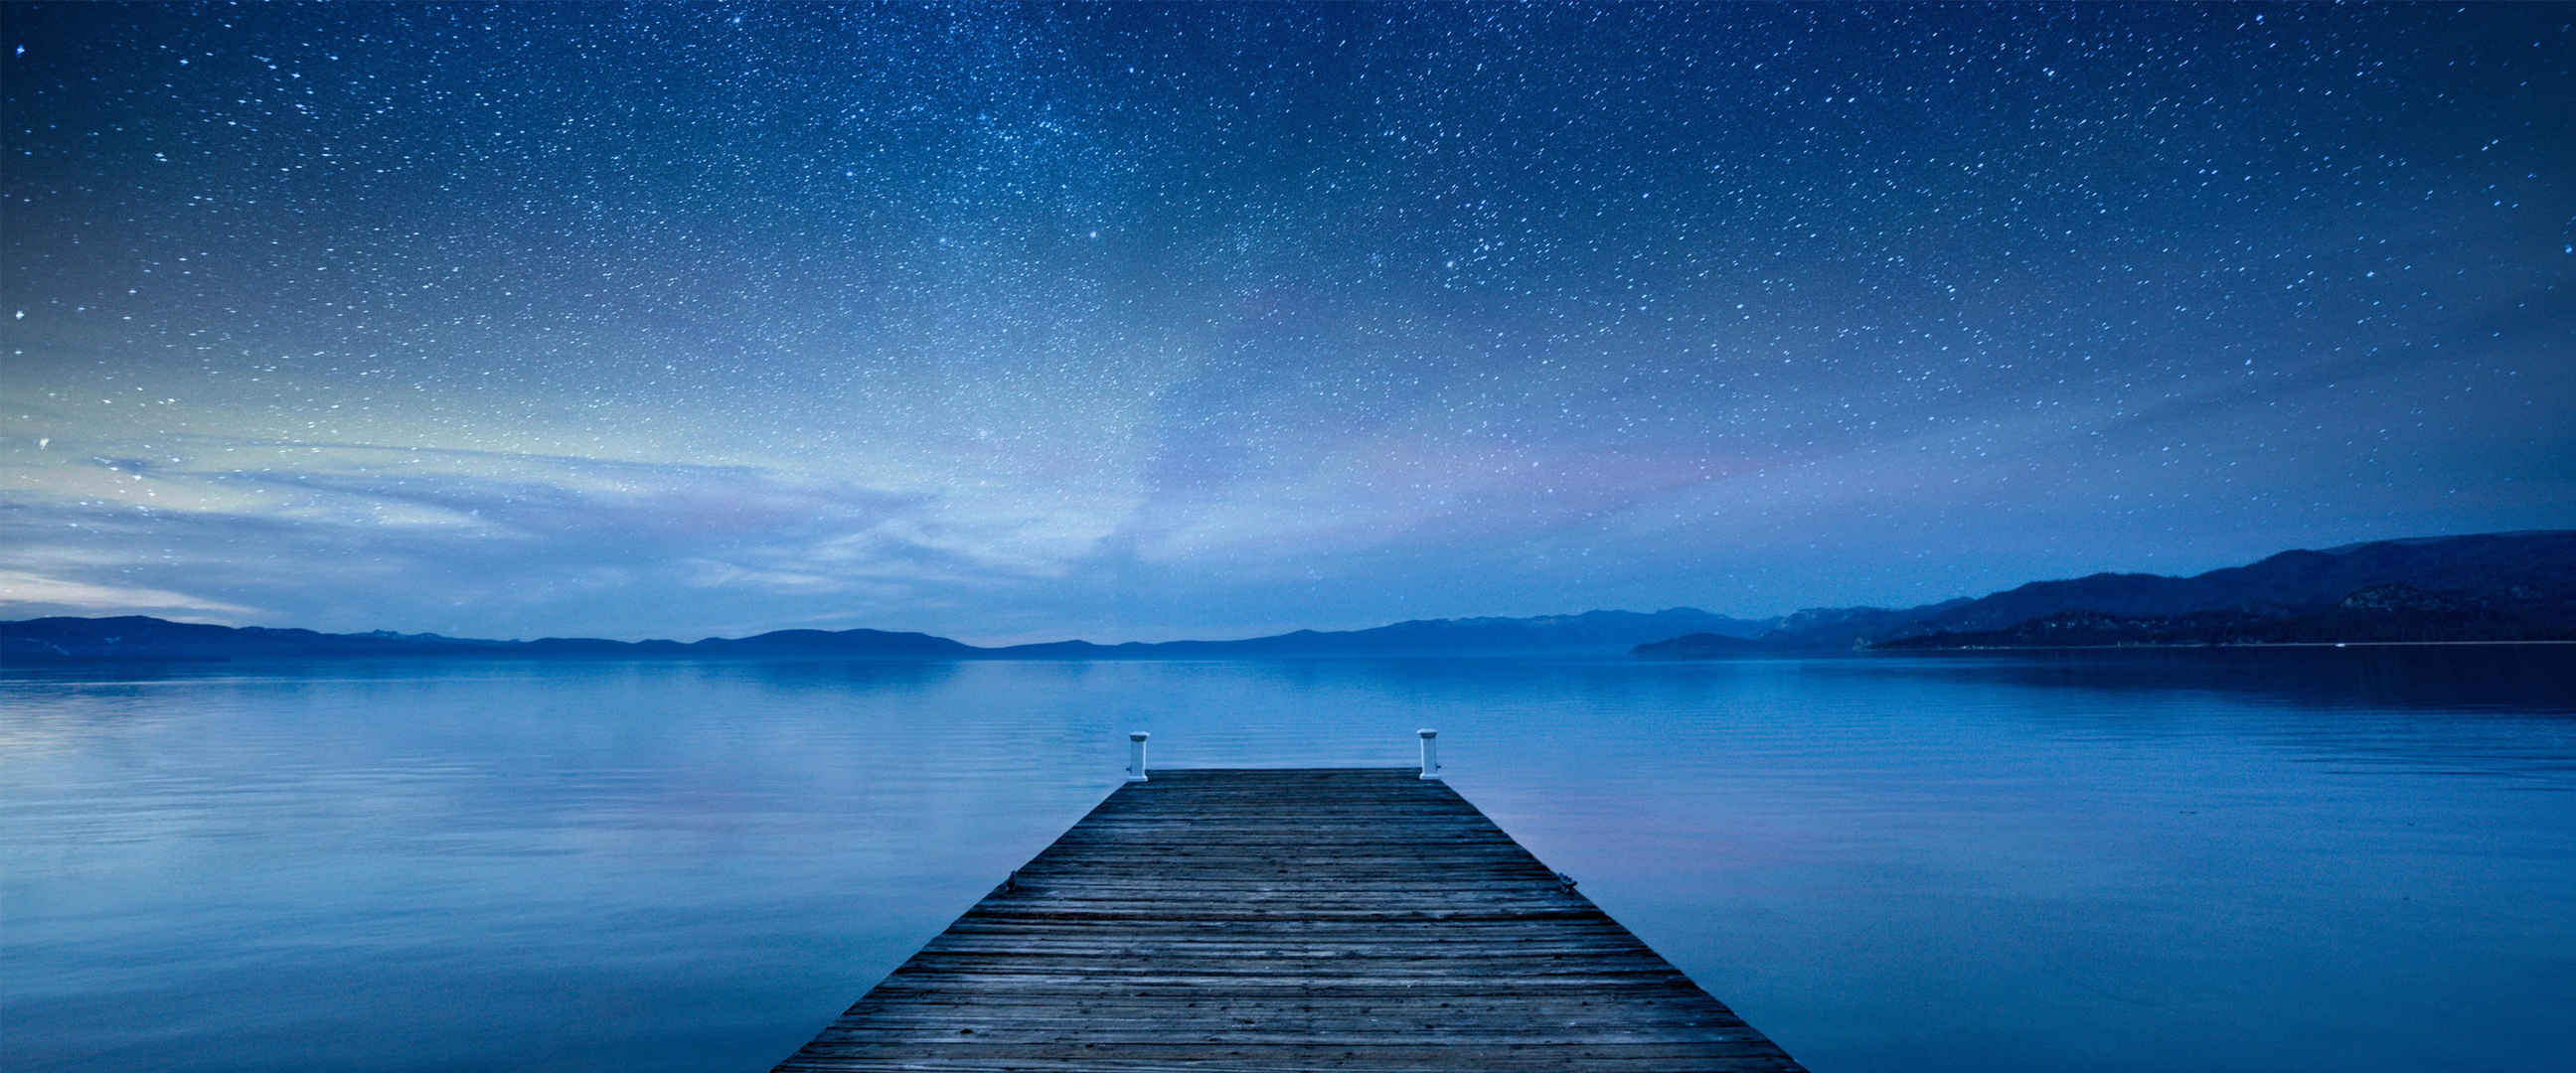 夜空繁星 大海 木桥 图片-